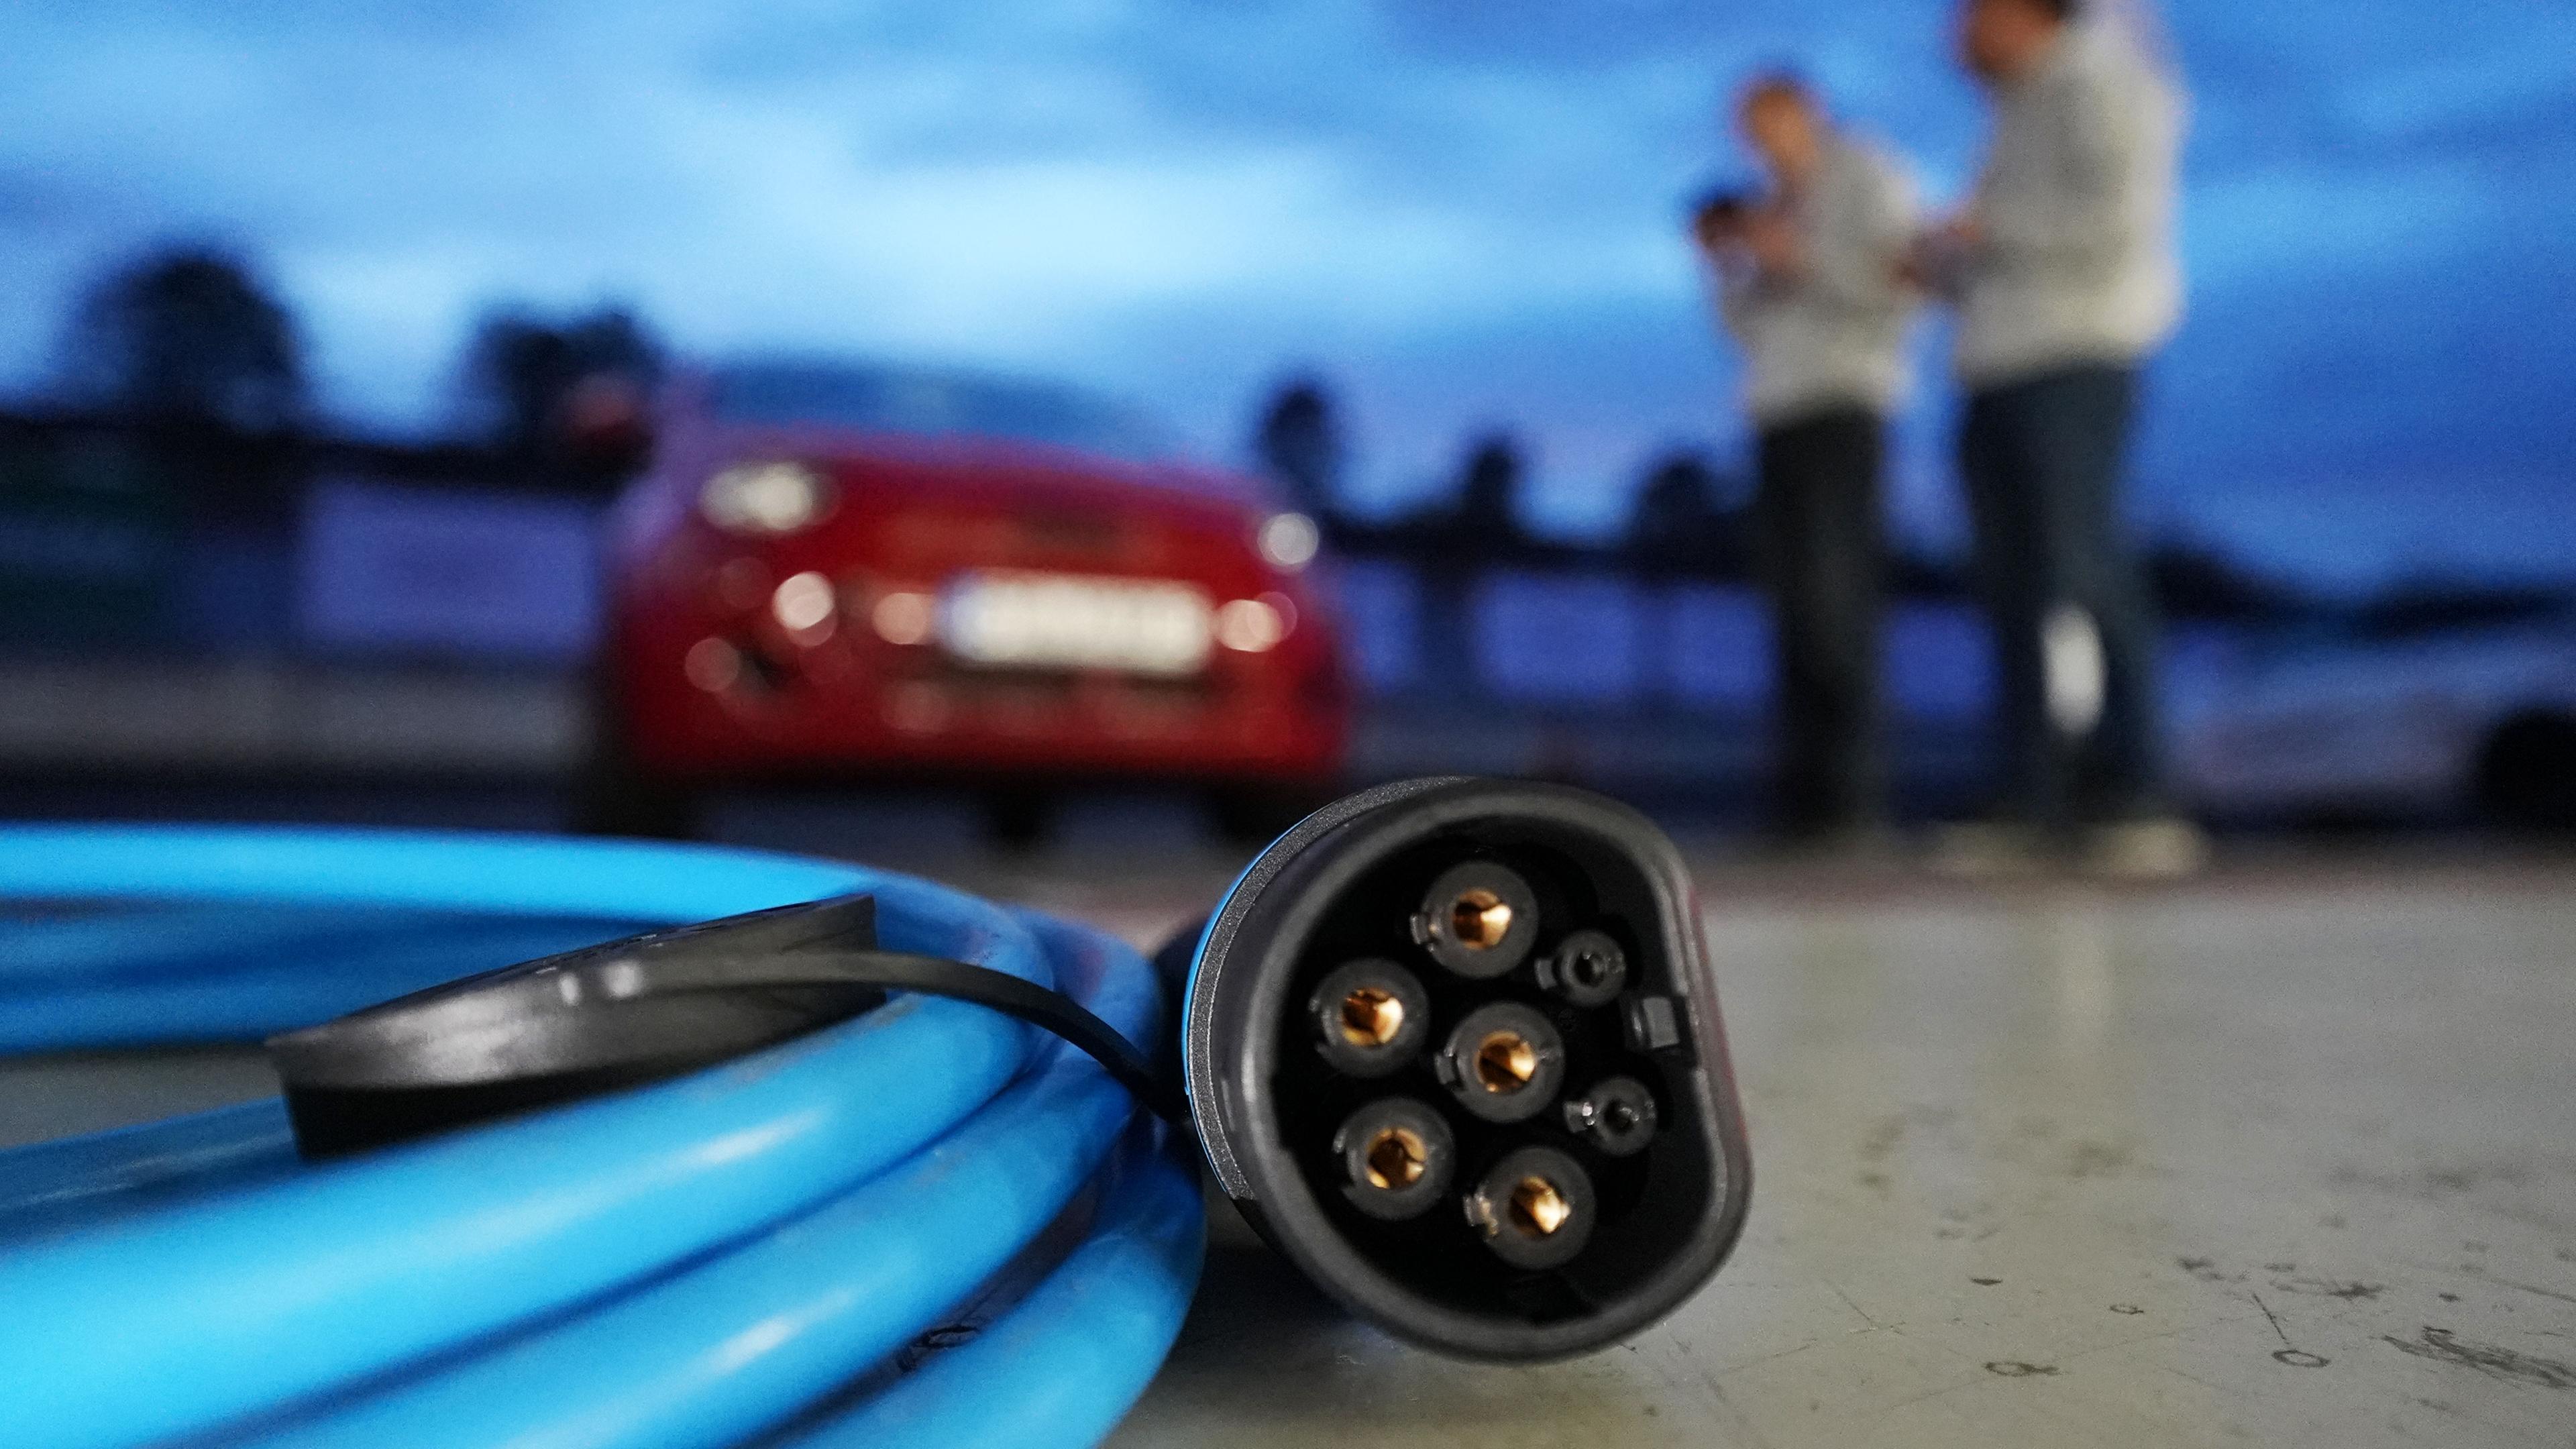 Ein blaues Ladekabel für ein E-Auto liegt auf dem Boden. Unscharf im Hintergrund stehen zwei Personen neben einem roten E-Auto.